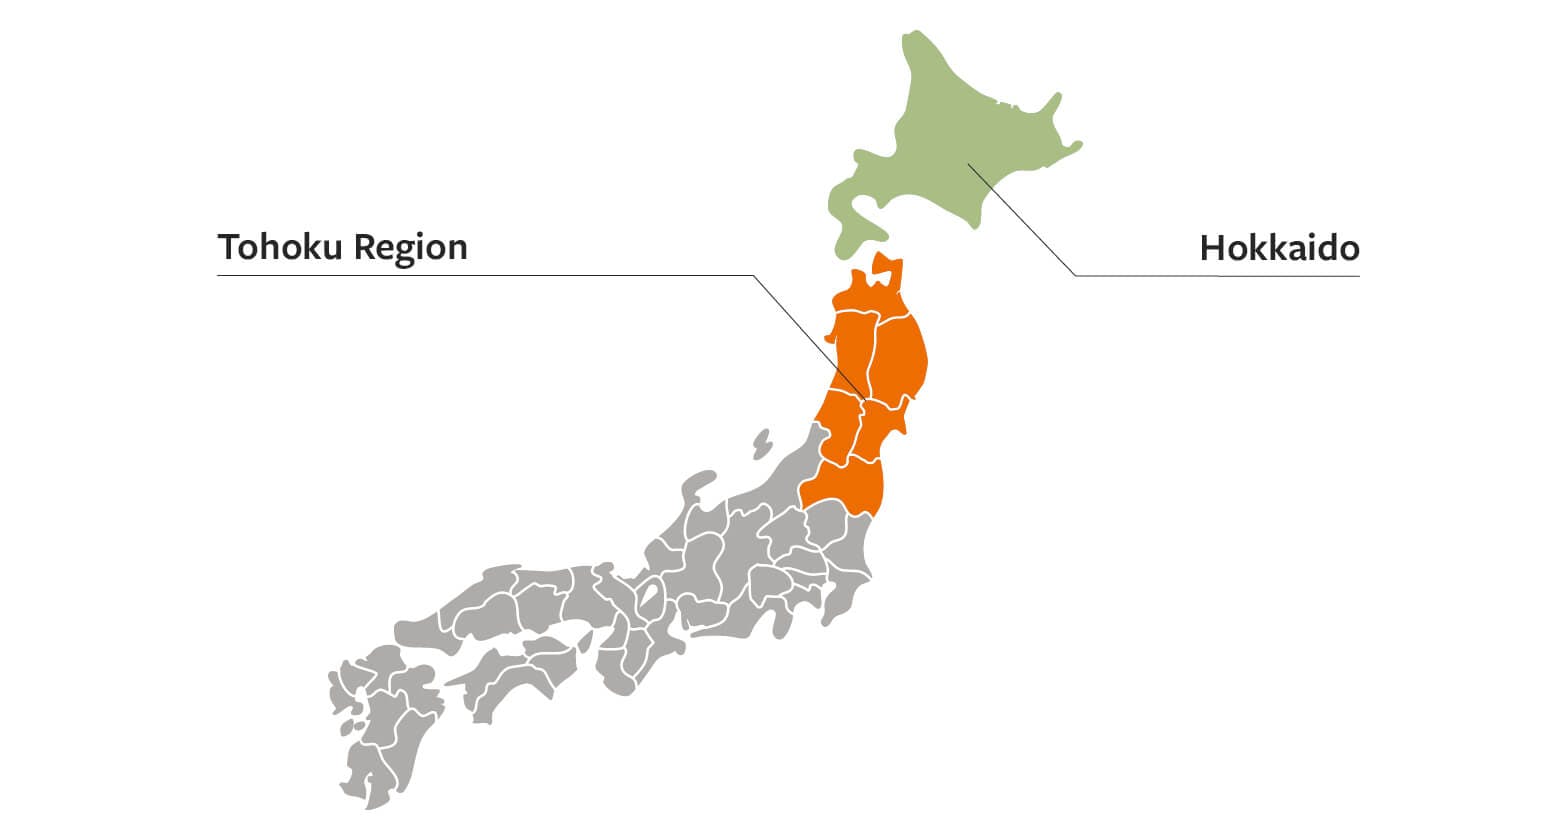 Tohoku and Hokkaido on the map